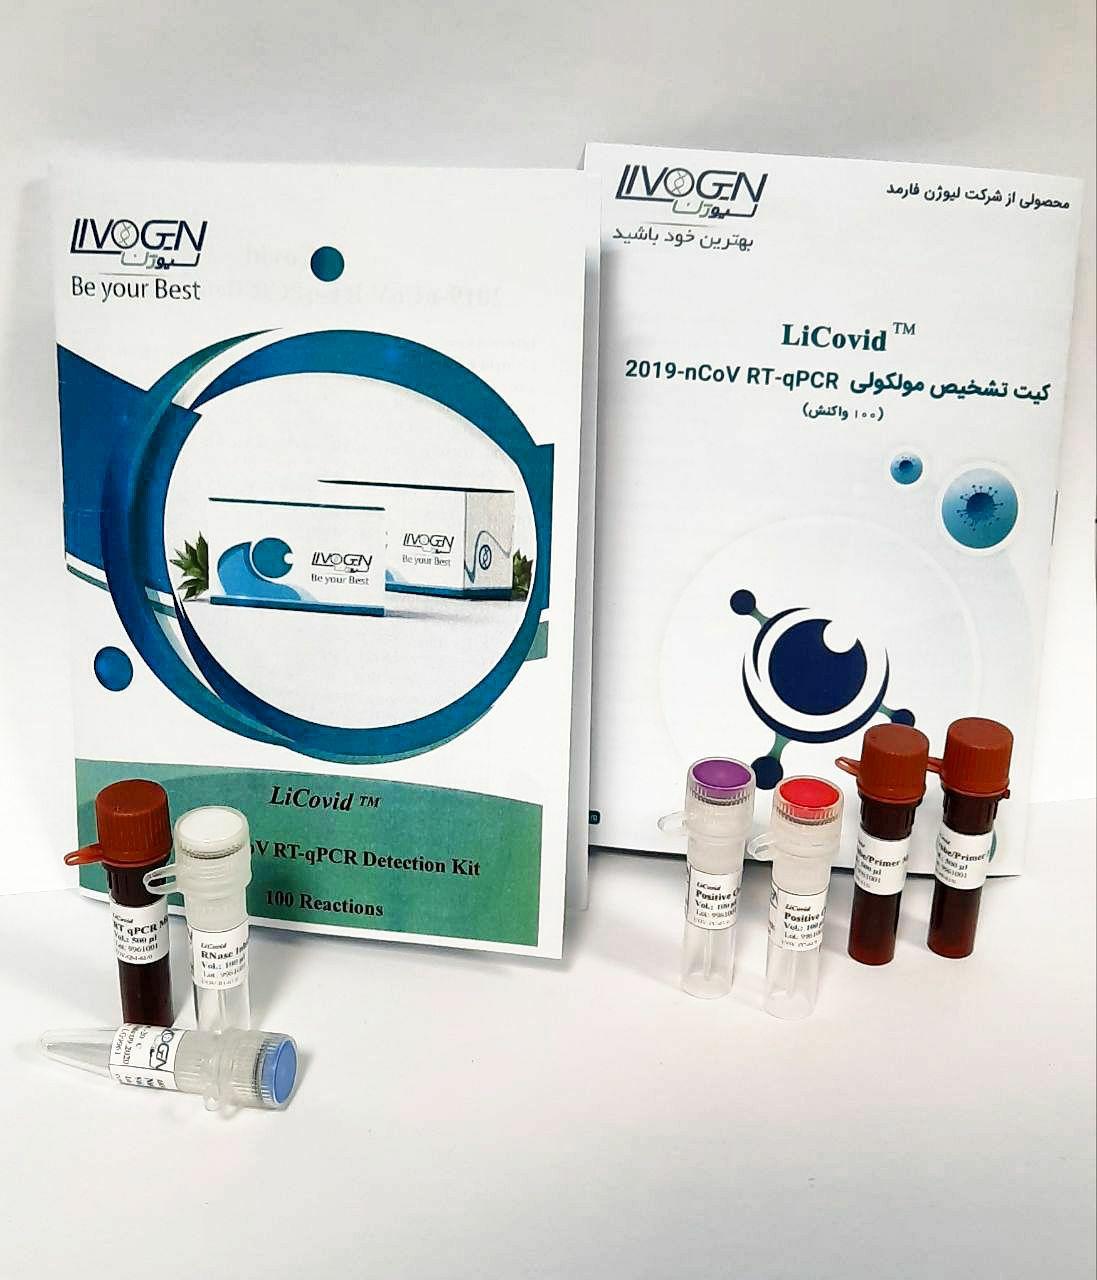 تولید کیت تشخیصی کووید 19 با نام تجاری LiCovid